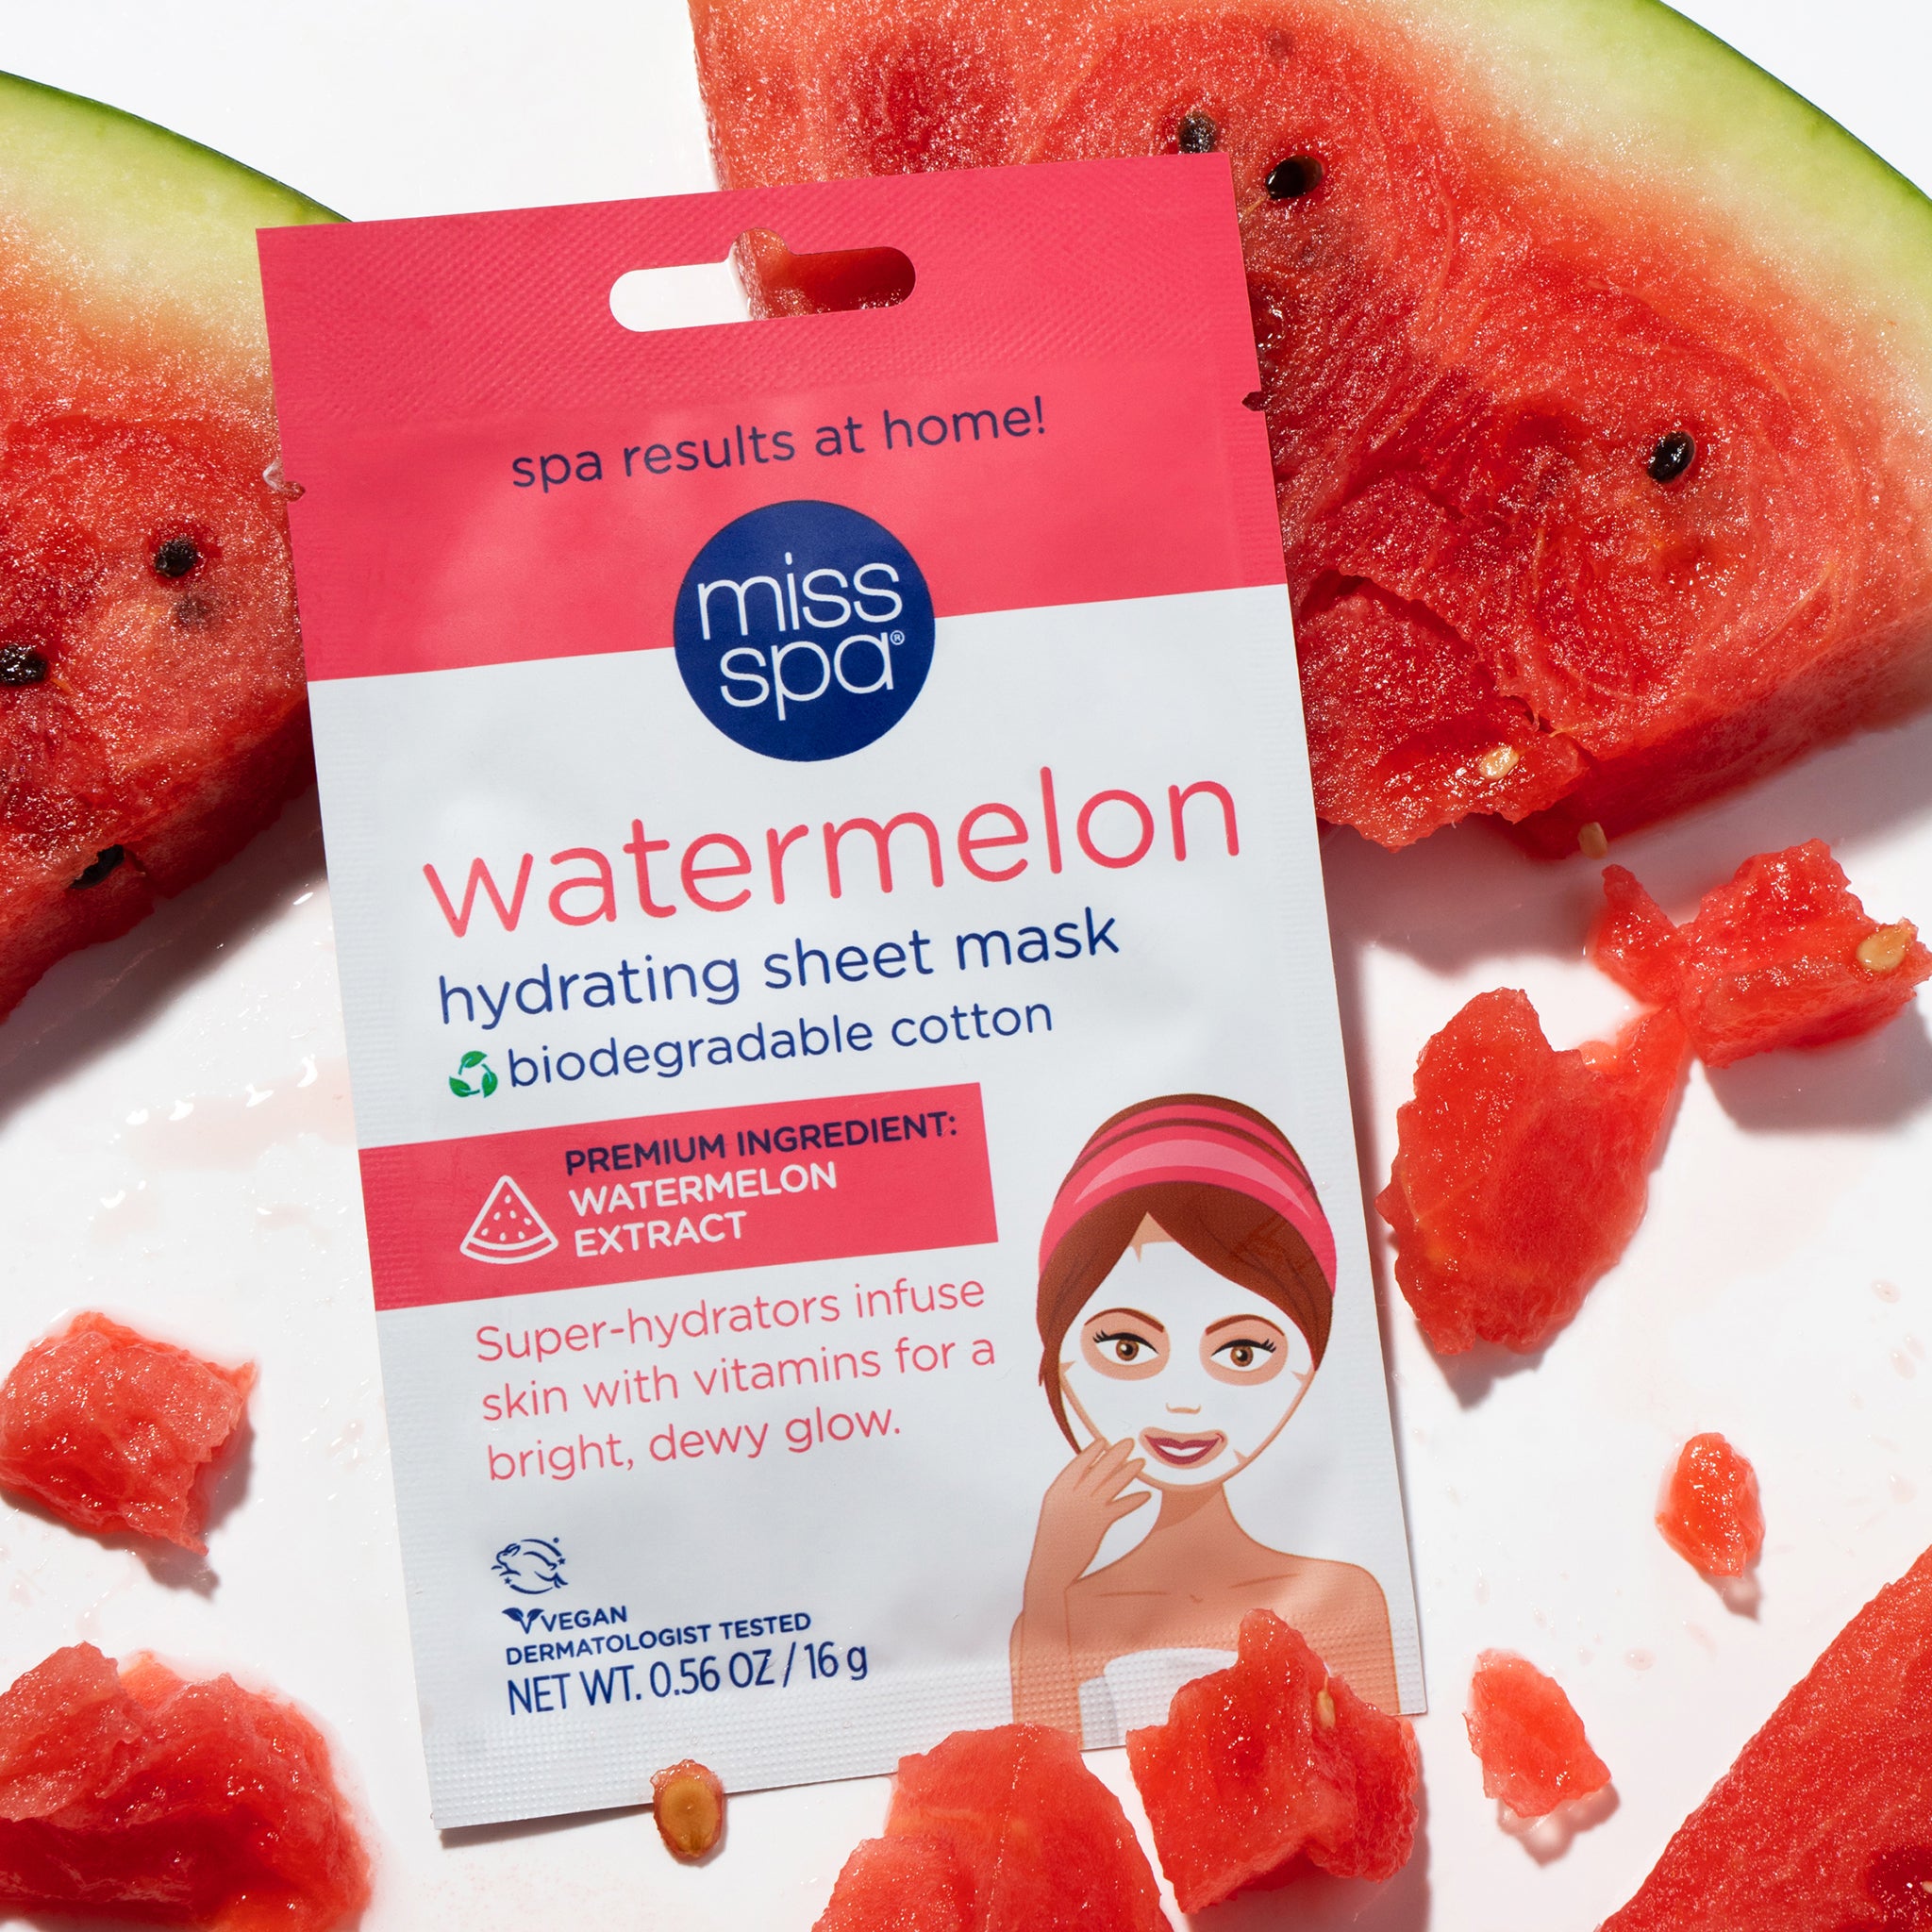 Watermelon Hydrating Sheet Mask